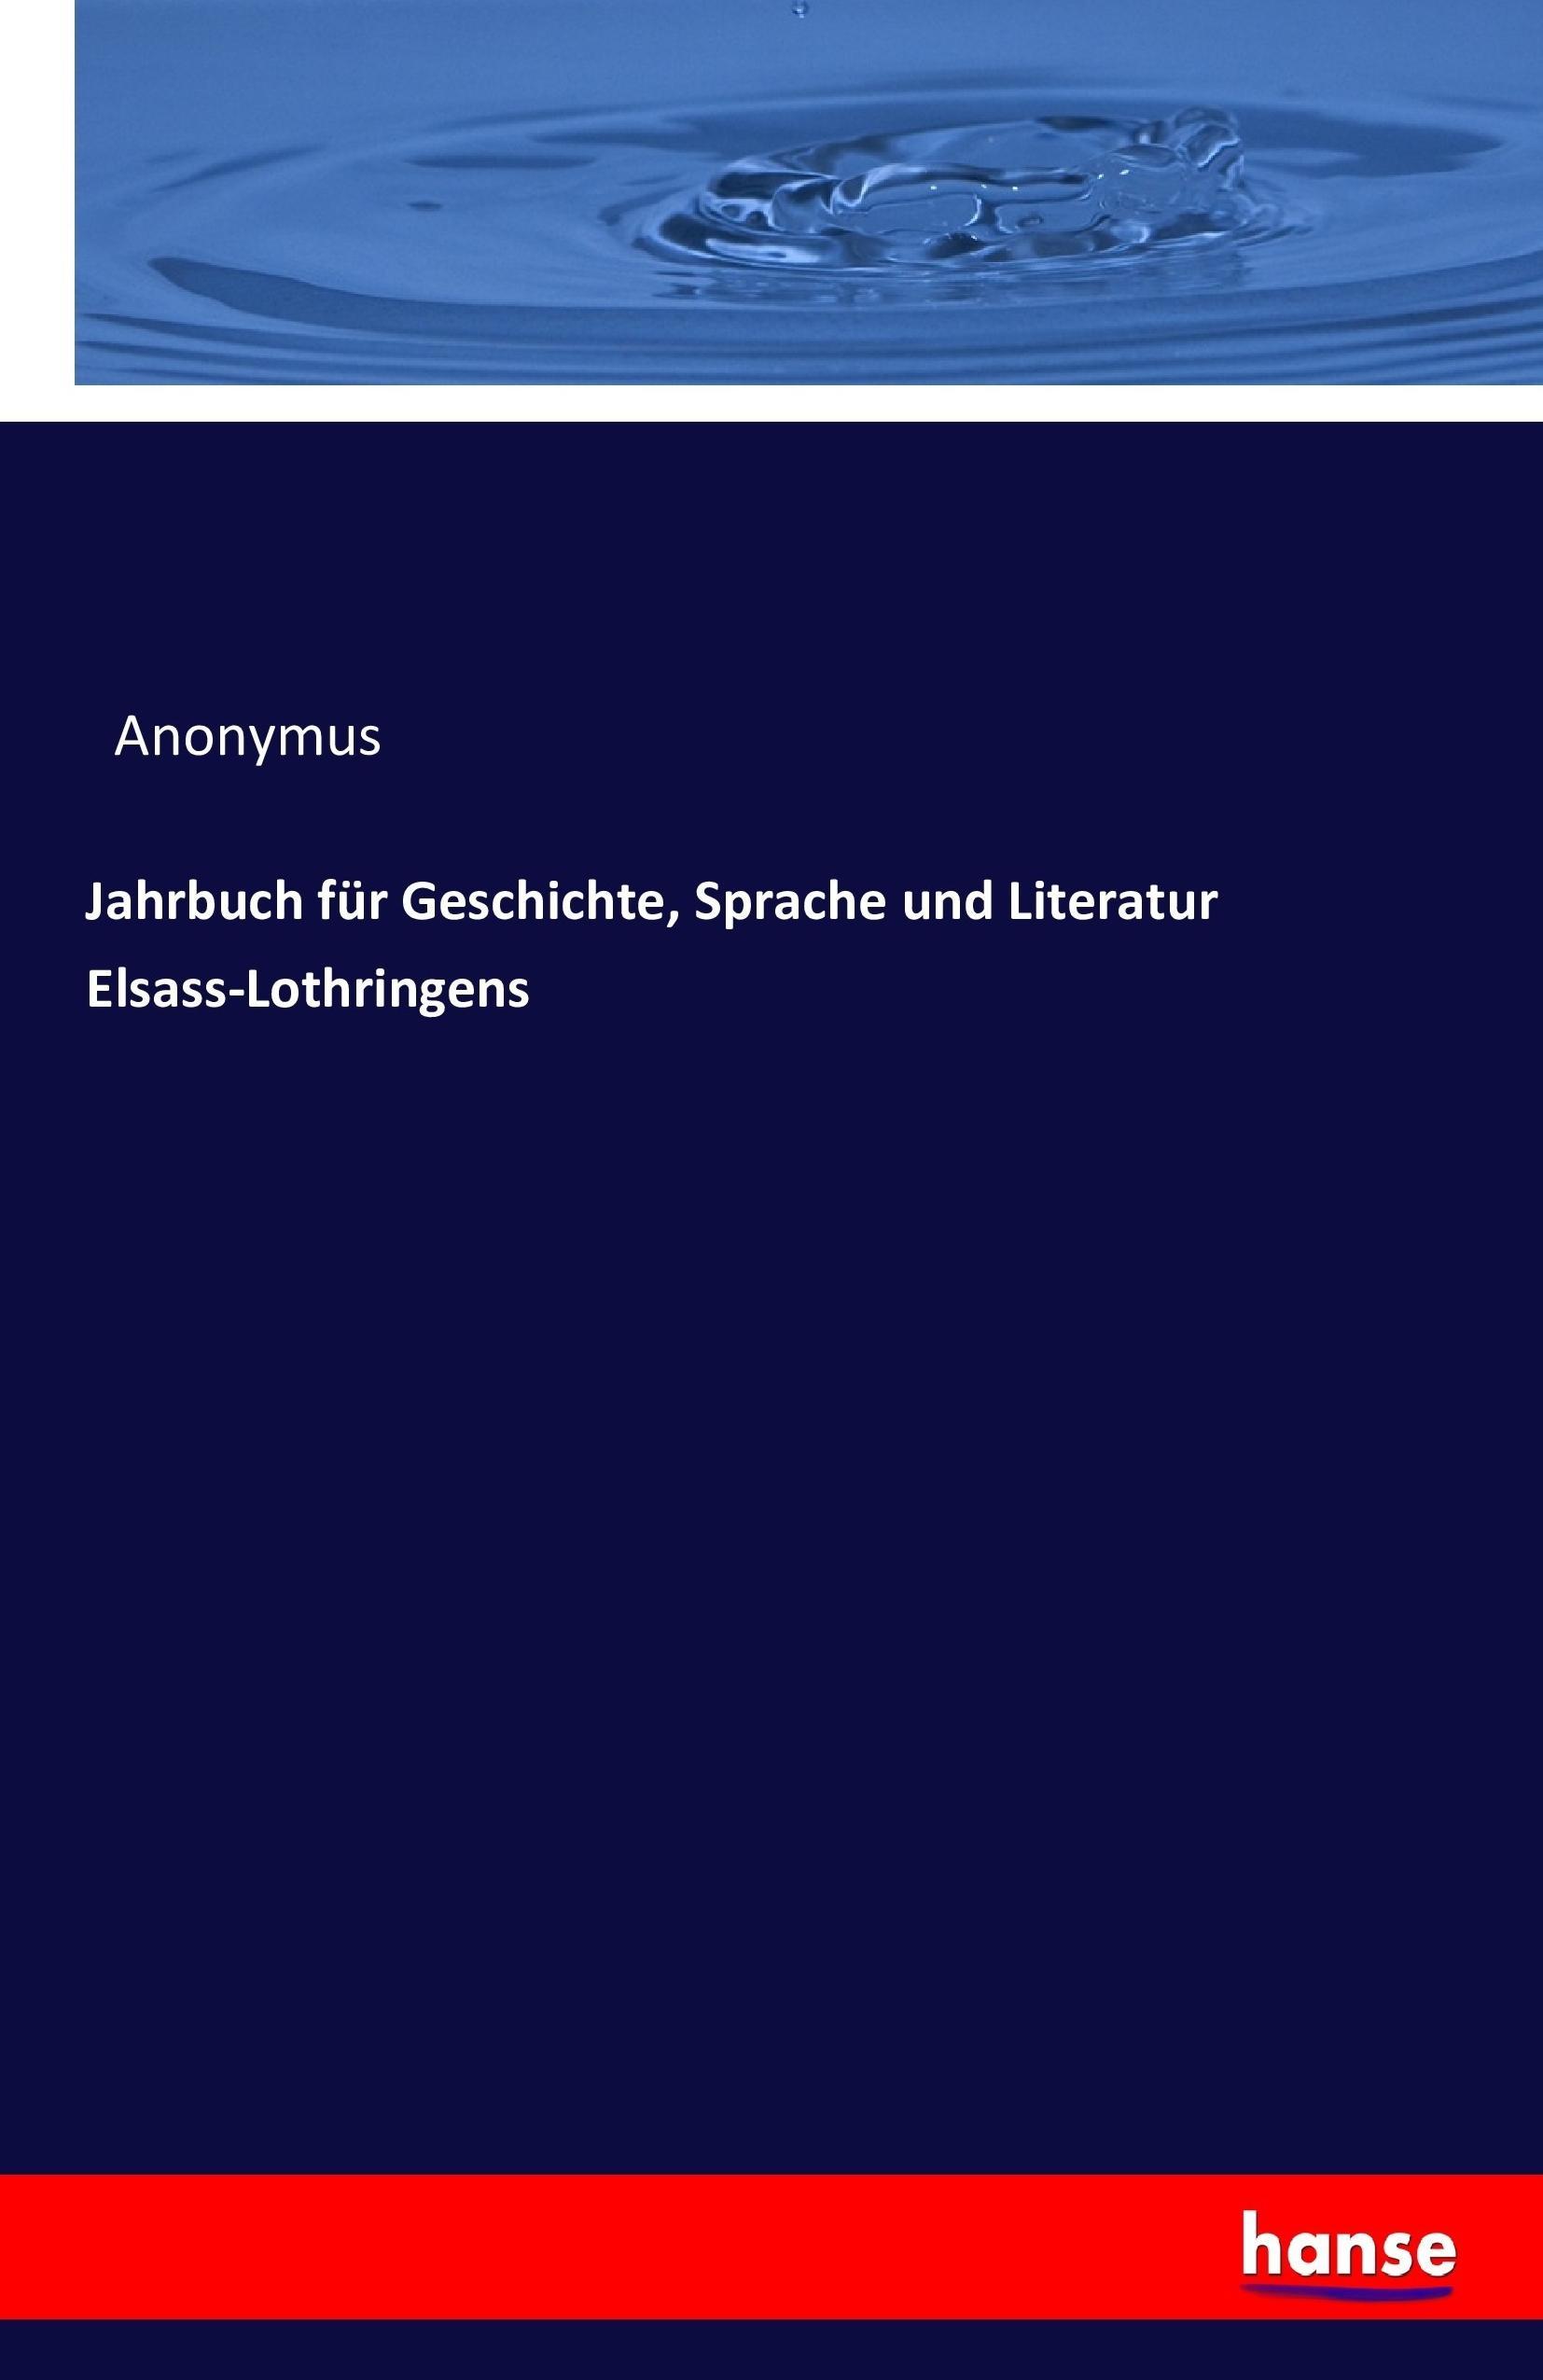 Jahrbuch fuer Geschichte, Sprache und Literatur Elsass-Lothringens - Anonym